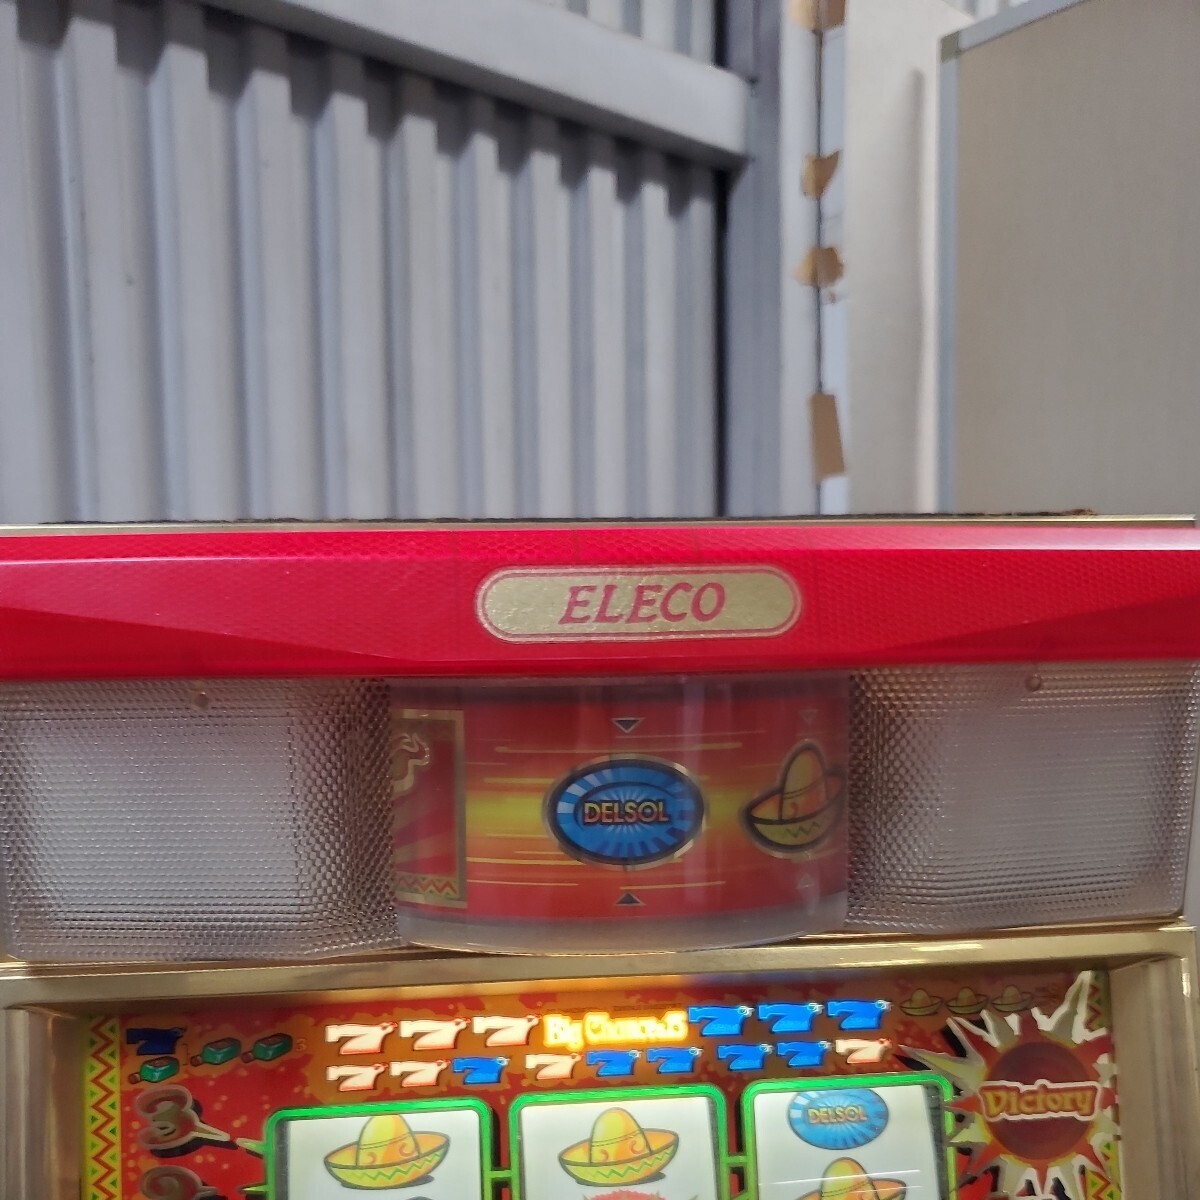  игровой автомат слот аппаратура слот слот шт. источник питания для бытового использования игровой автомат ereko Delsol 2 ключ отсутствует дешевый распродажа ..-.